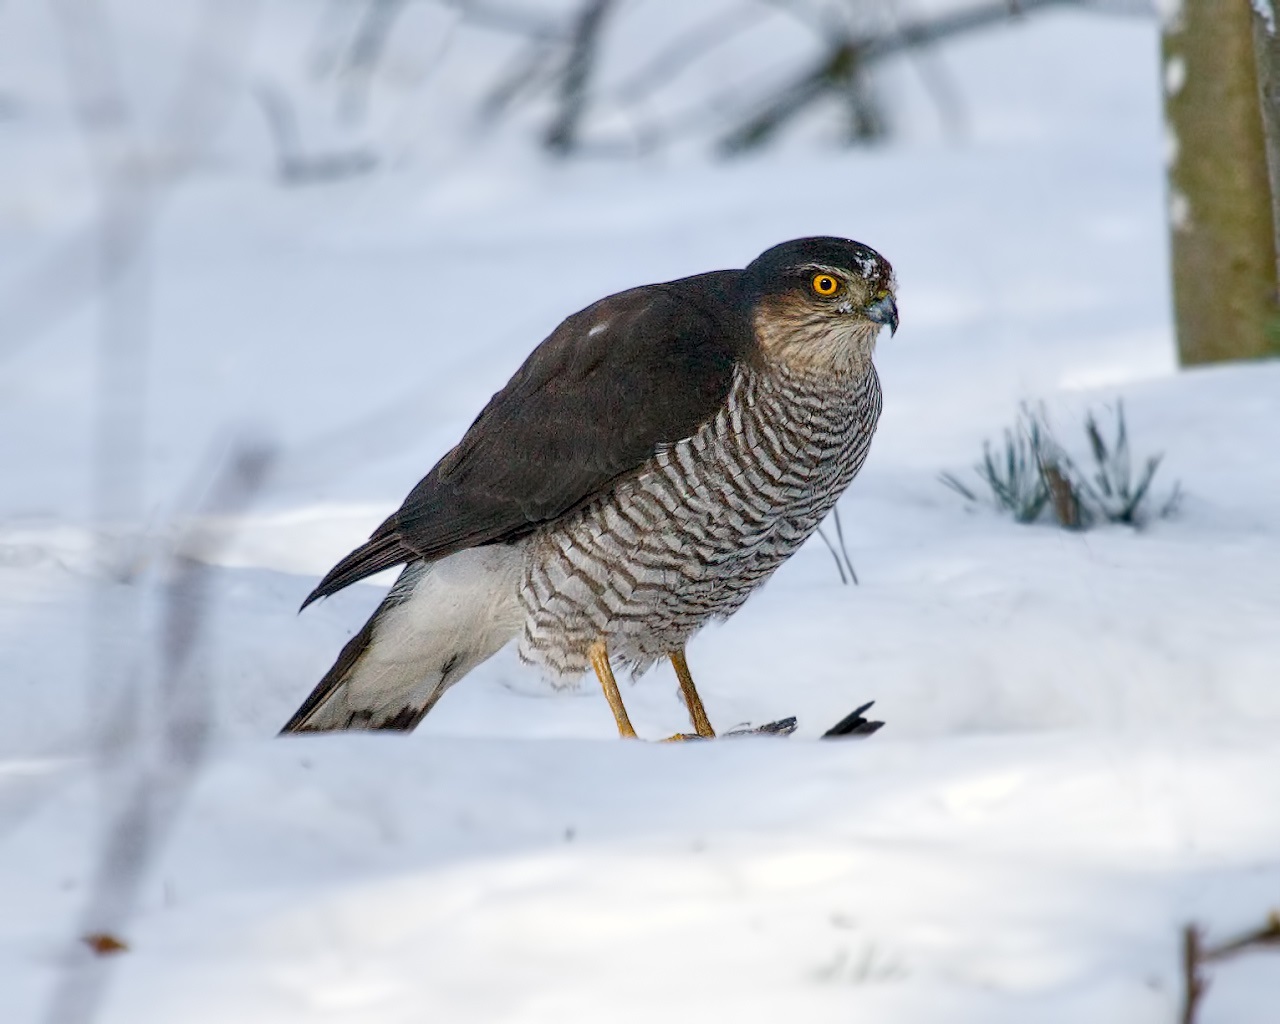 Sparrow Hawk lori Snow pẹlu Prey